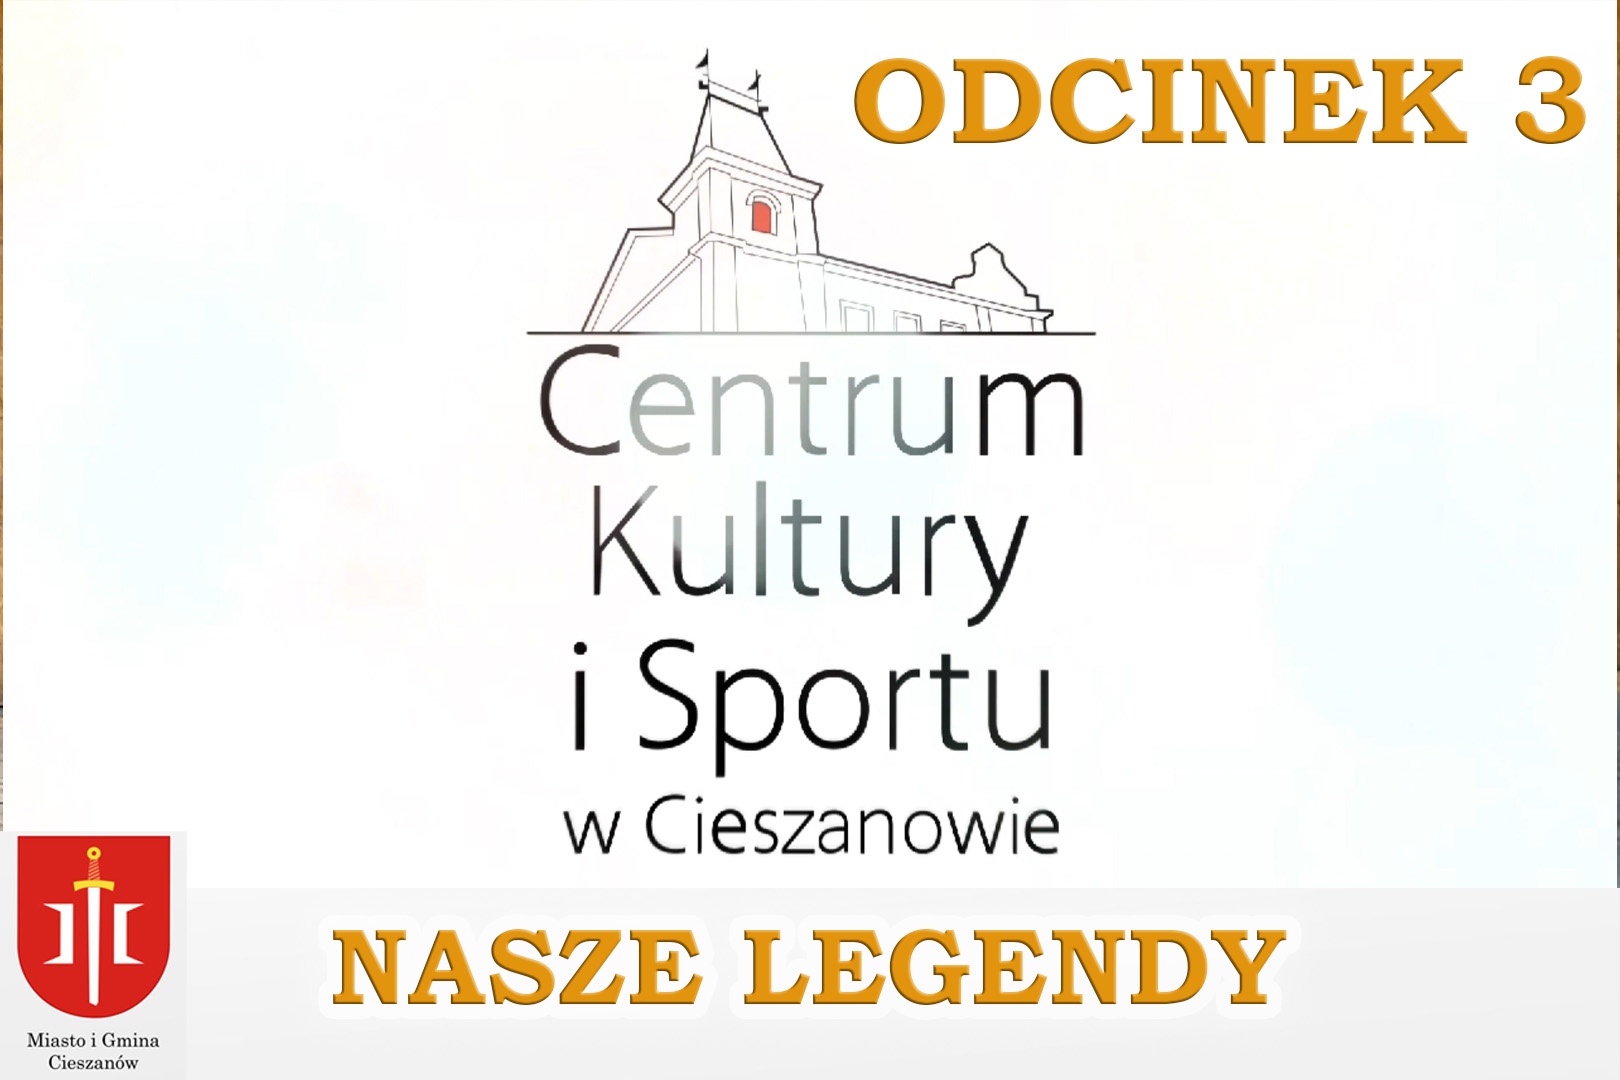 You are currently viewing Trzecia odsłona lokalnych legend